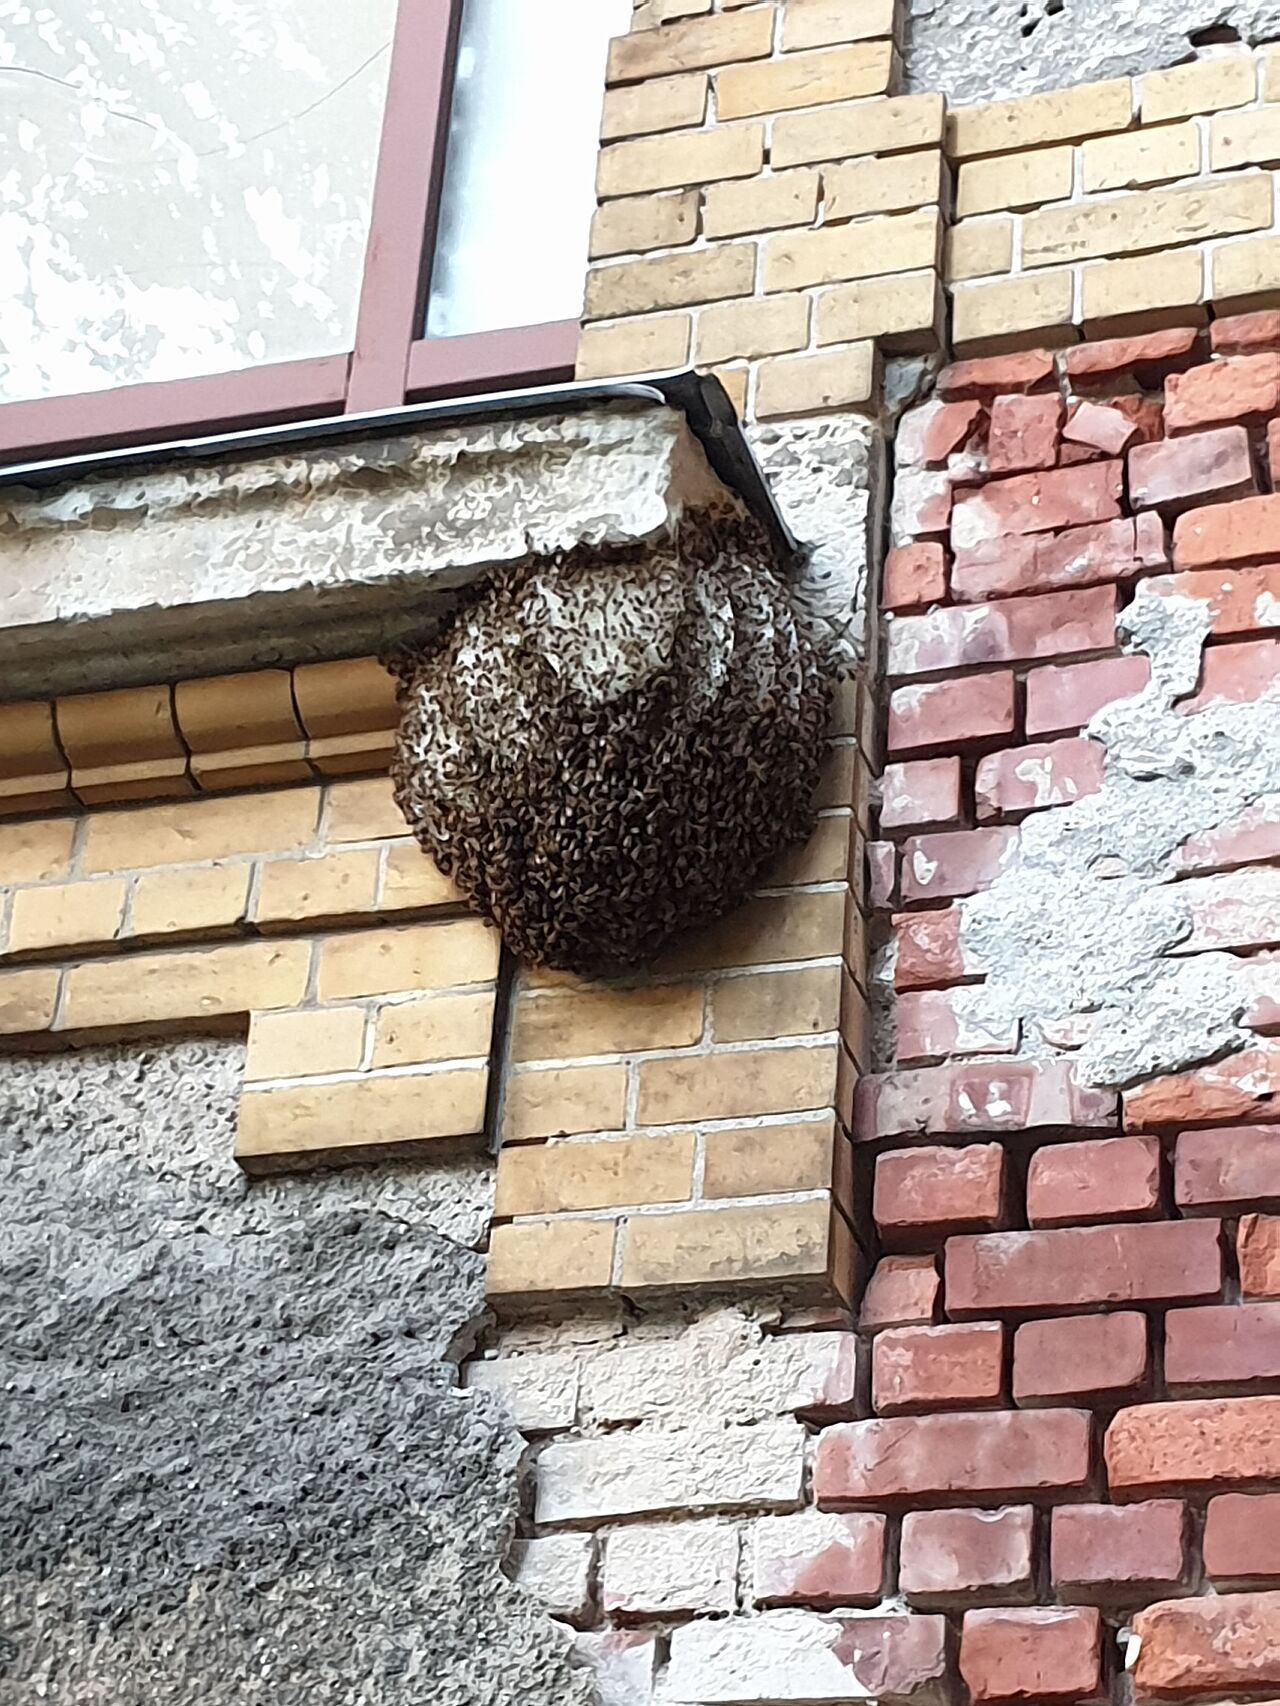 Bienenschwarm an der Hauswand